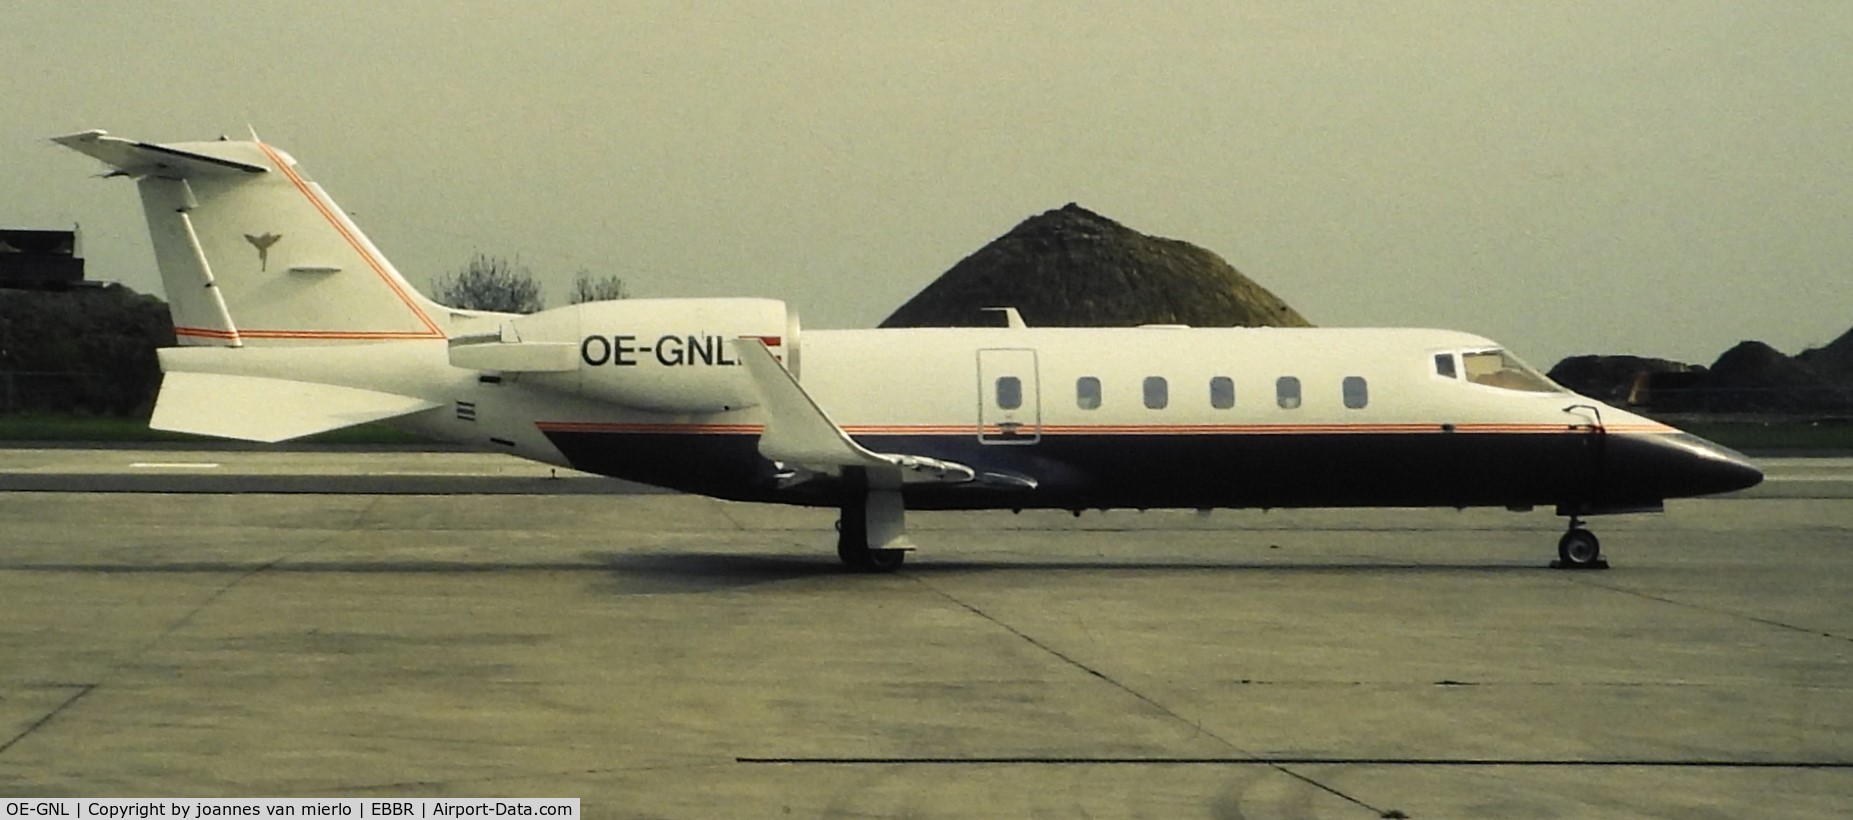 OE-GNL, 1994 Learjet 60 C/N 60-032, ex-slide